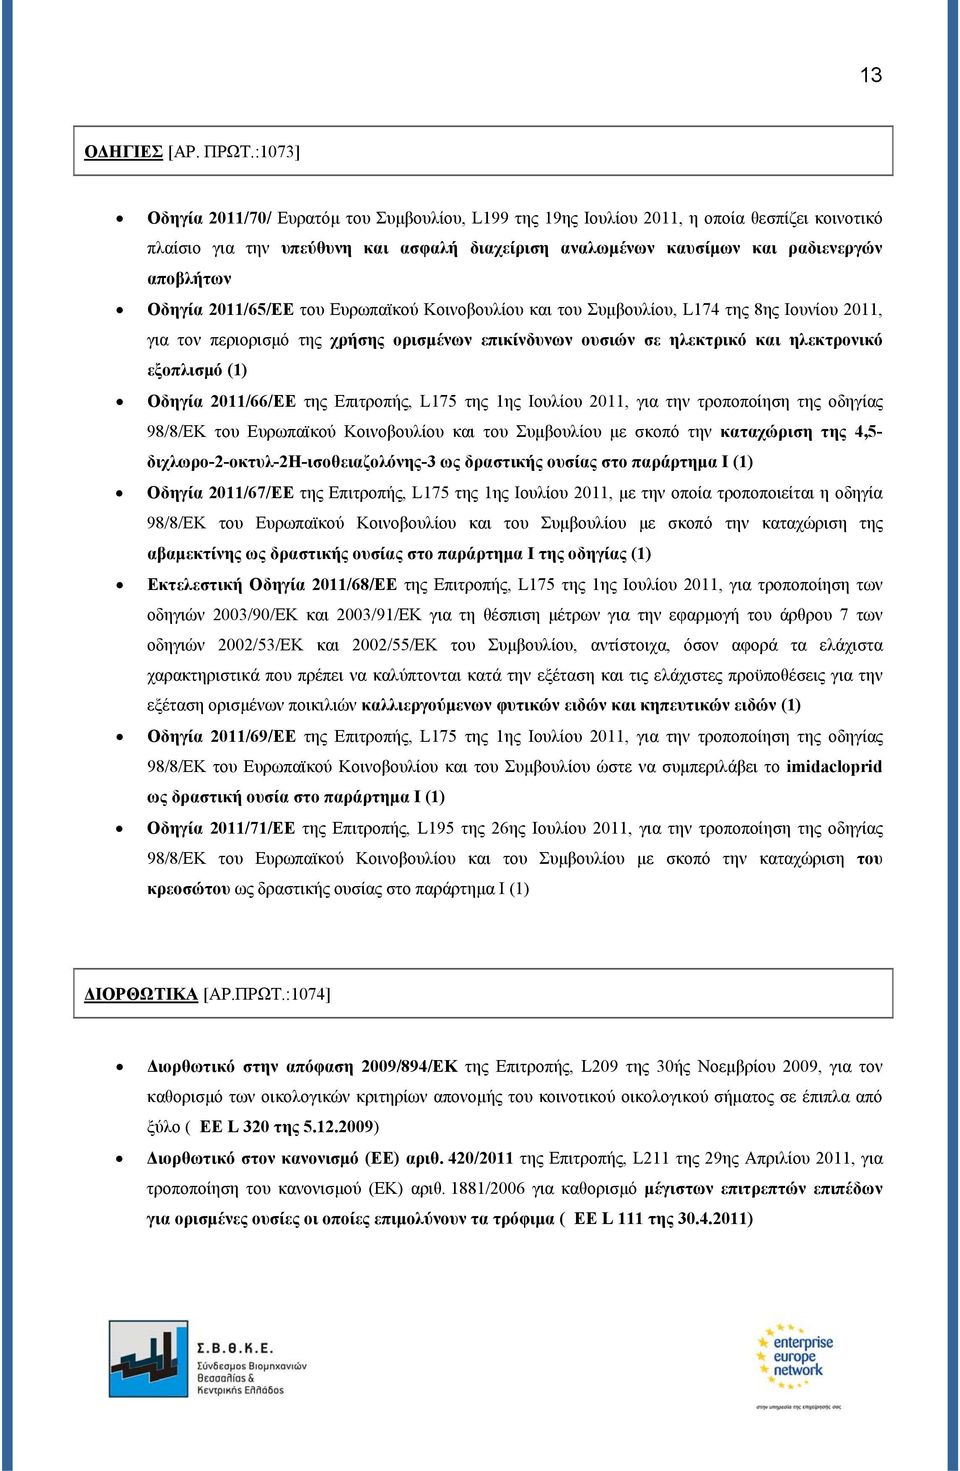 Οδηγία 2011/65/ΕΕ του Ευρωπαϊκού Κοινοβουλίου και του Συμβουλίου, L174 της 8ης Ιουνίου 2011, για τον περιορισμό της χρήσης ορισμένων επικίνδυνων ουσιών σε ηλεκτρικό και ηλεκτρονικό εξοπλισμό (1)